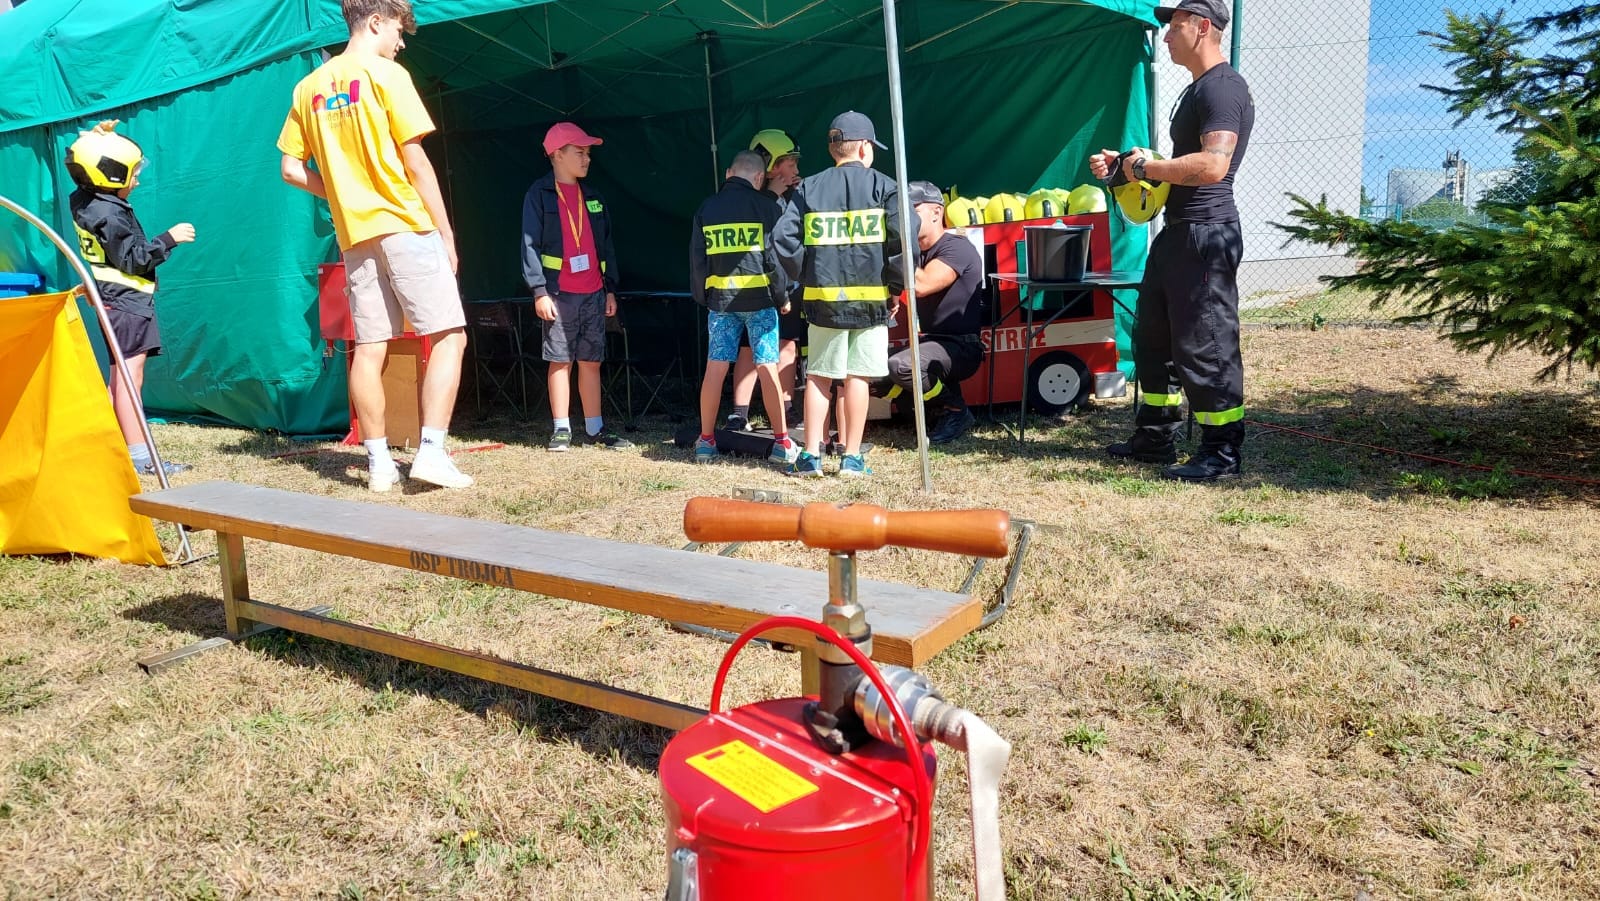 Strażacy z JRG Zgorzelec prowadzą zajęcia podczas letniej akcji Kindermiasto